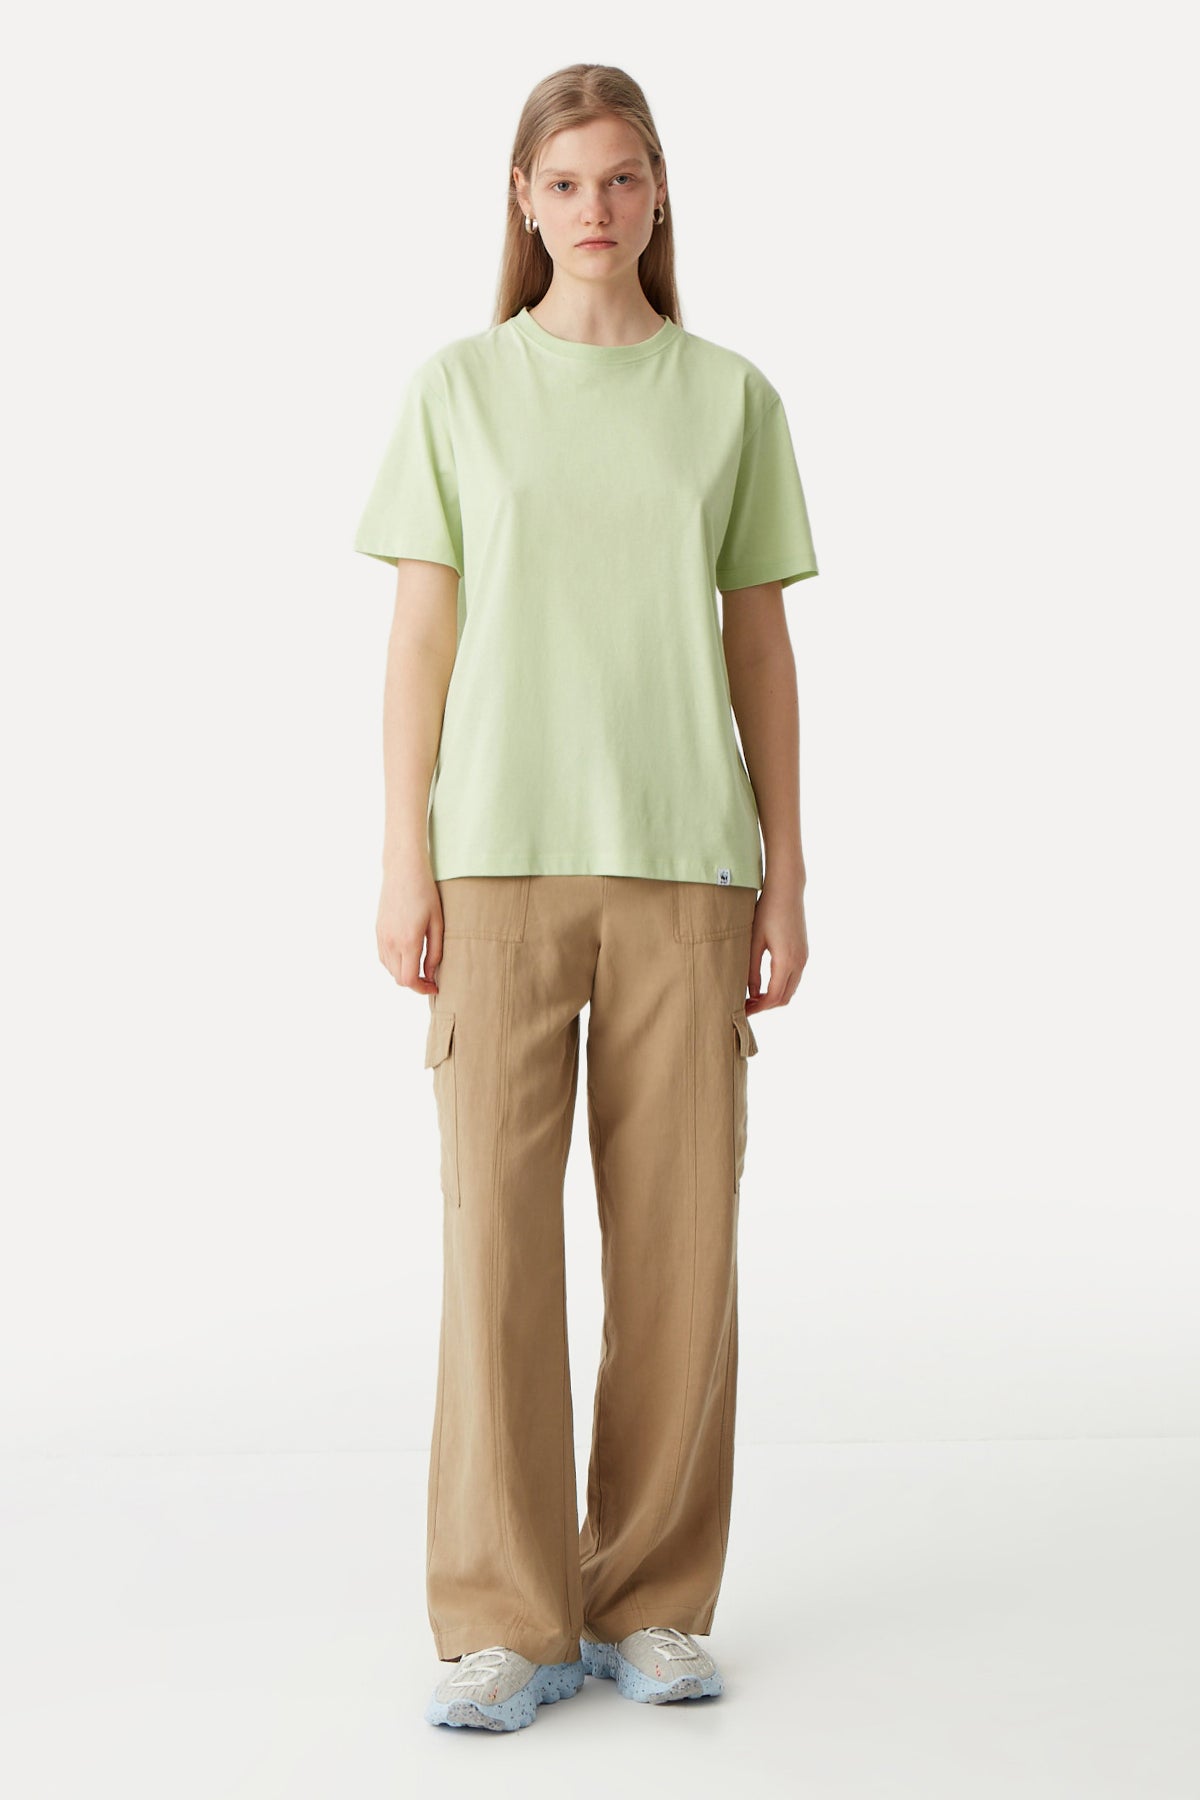 Common Ground Light-Weight T-Shirt - Fıstık Yeşili